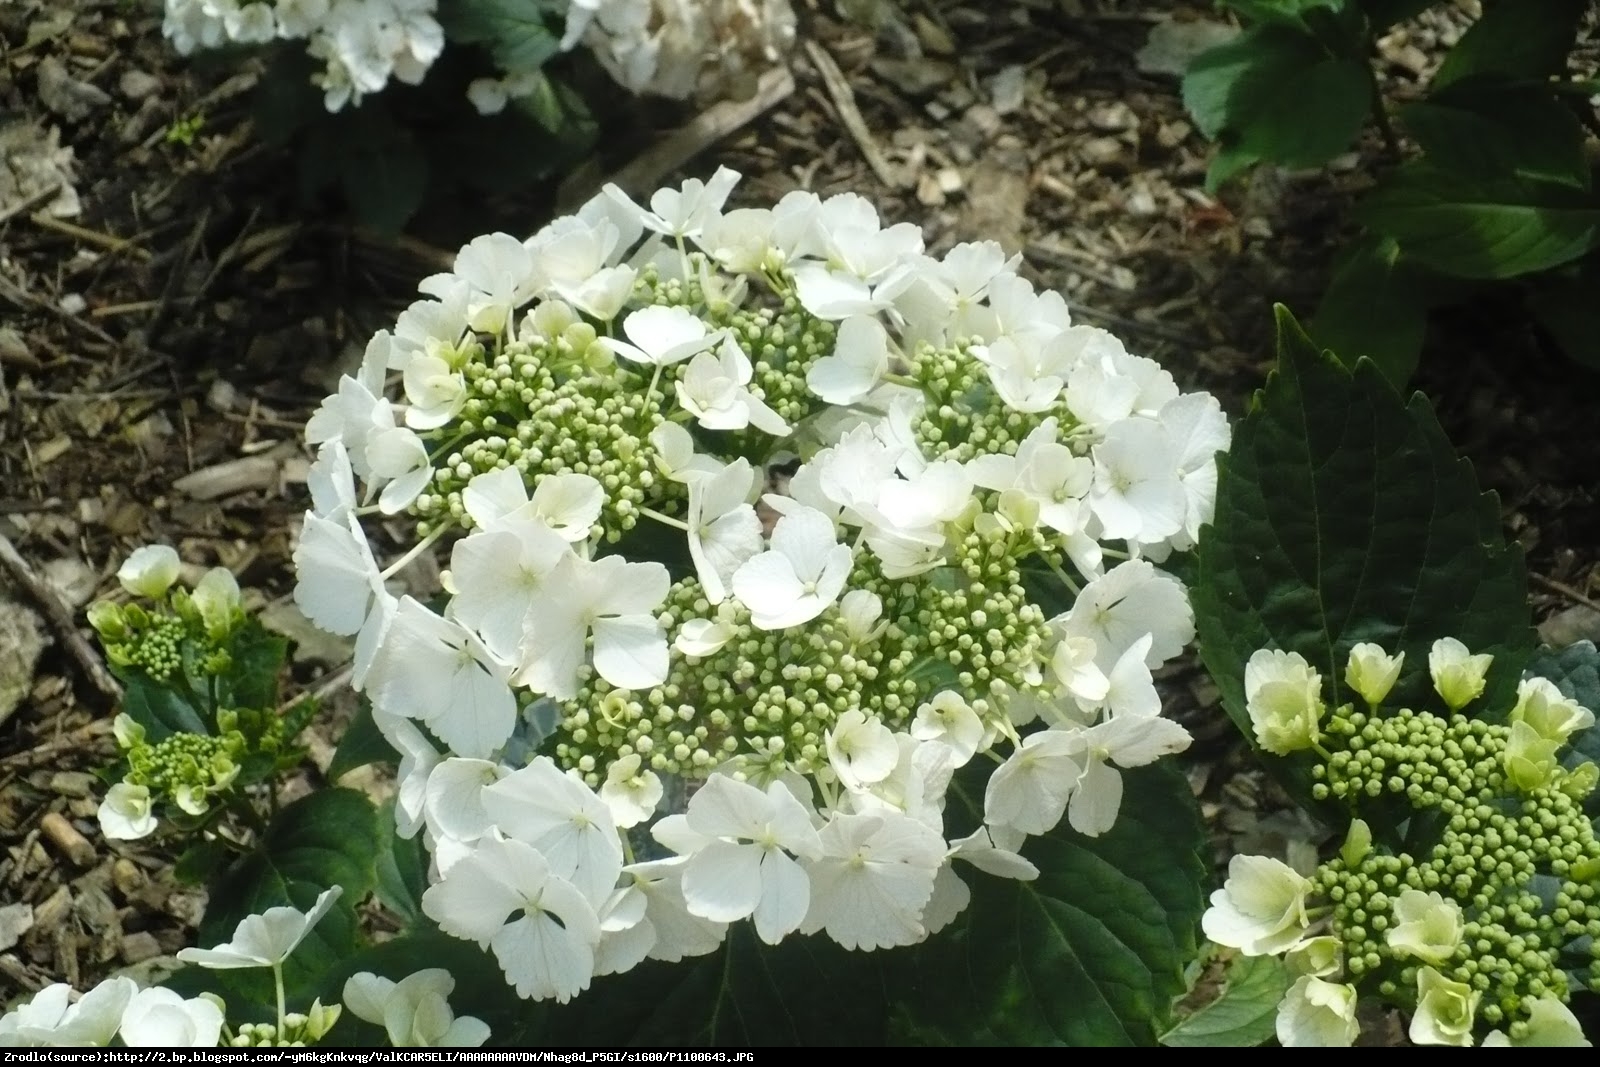 Hortensja ogrodowa biała - Hydrangea macrophylla biała